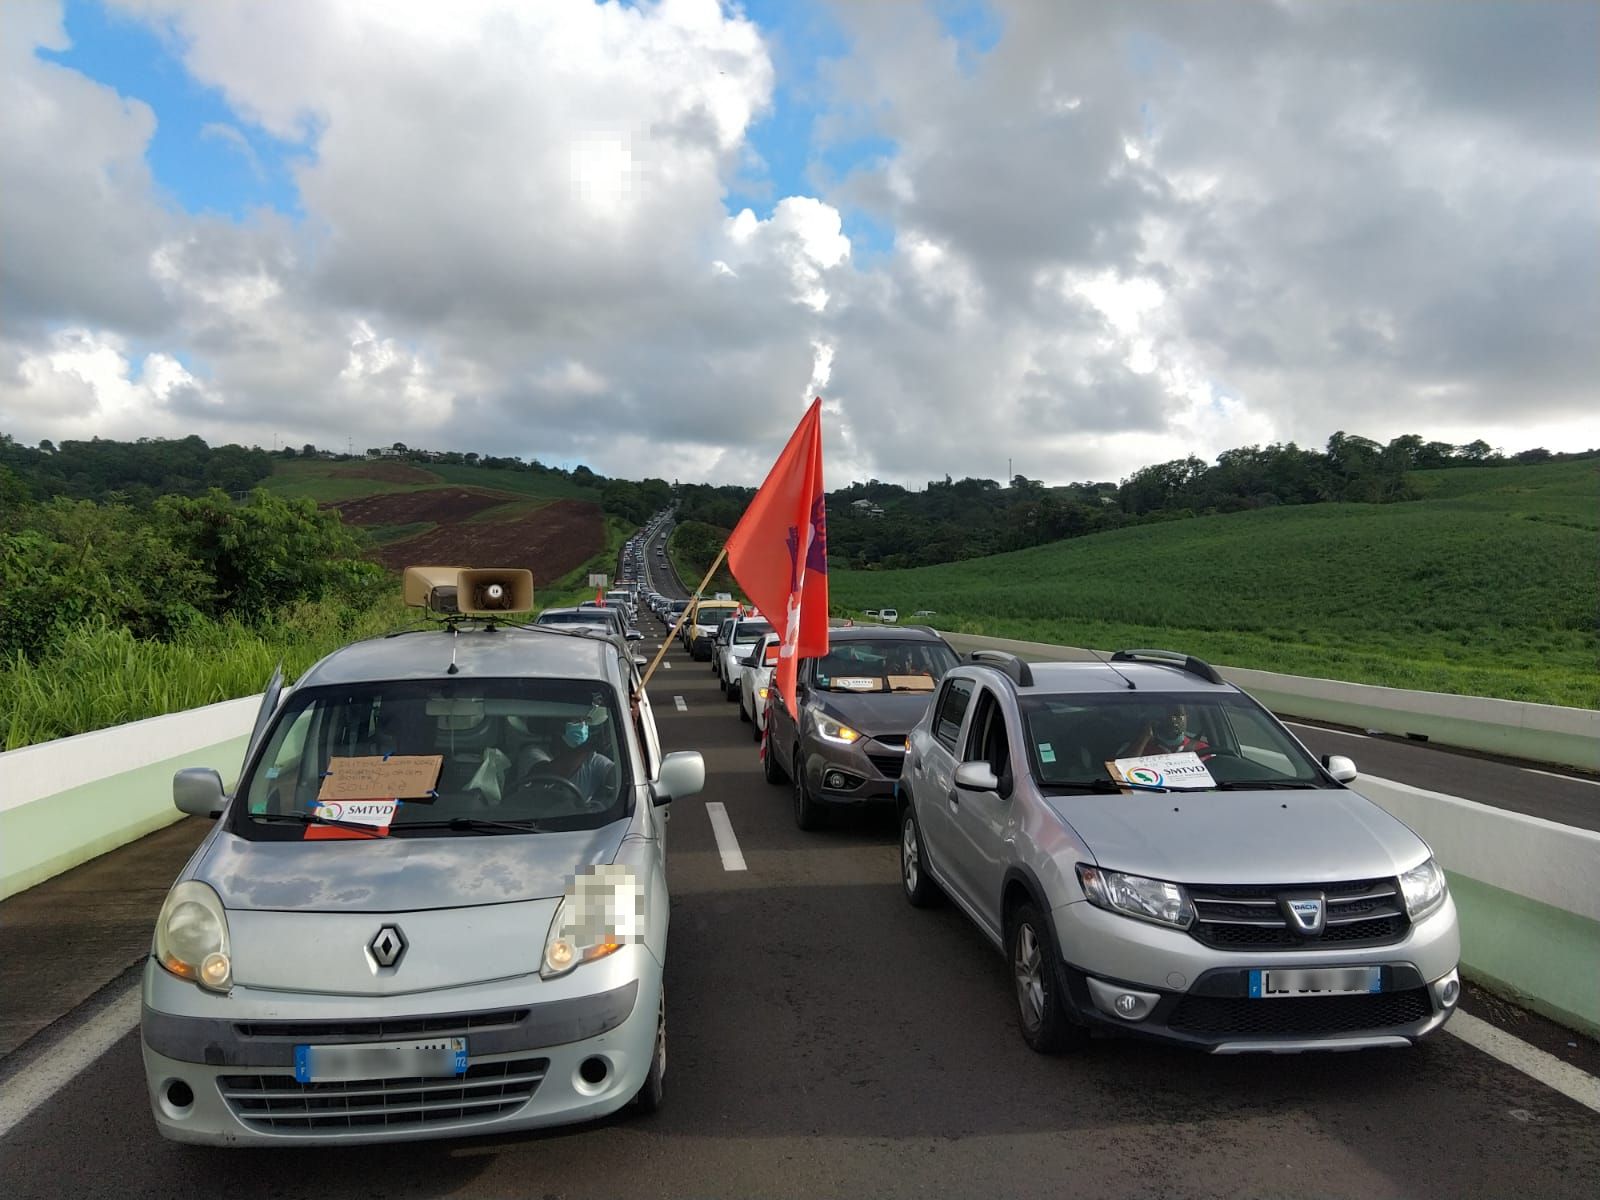     SMTVD : l'USAM en opération molokoy sur les routes de Martinique

